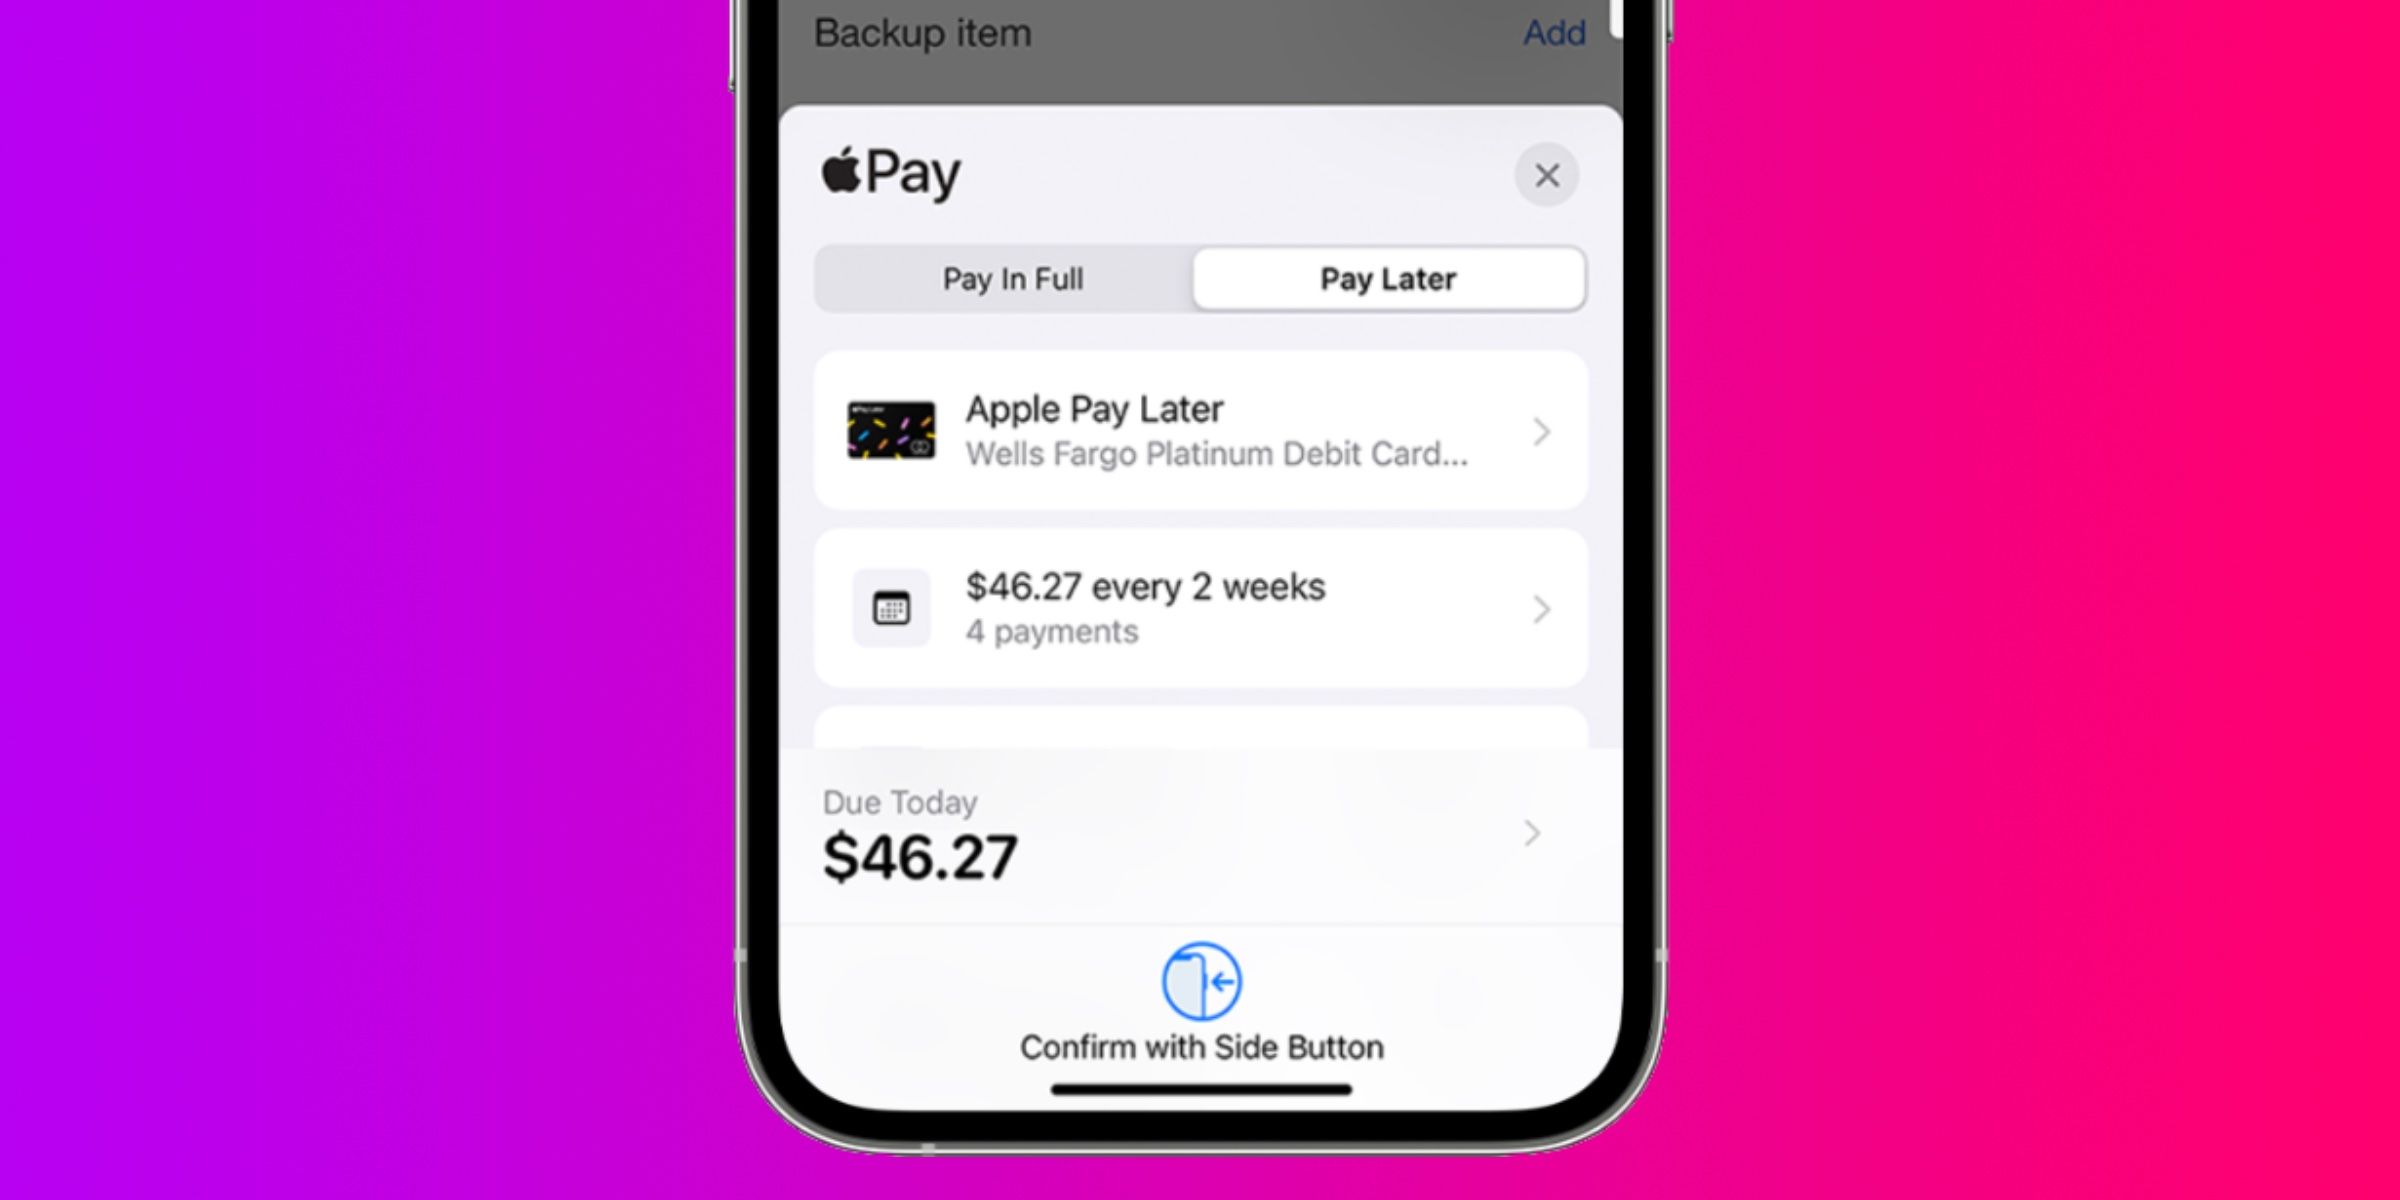 ¿Cuándo hará Apple Pay Later su debut público?